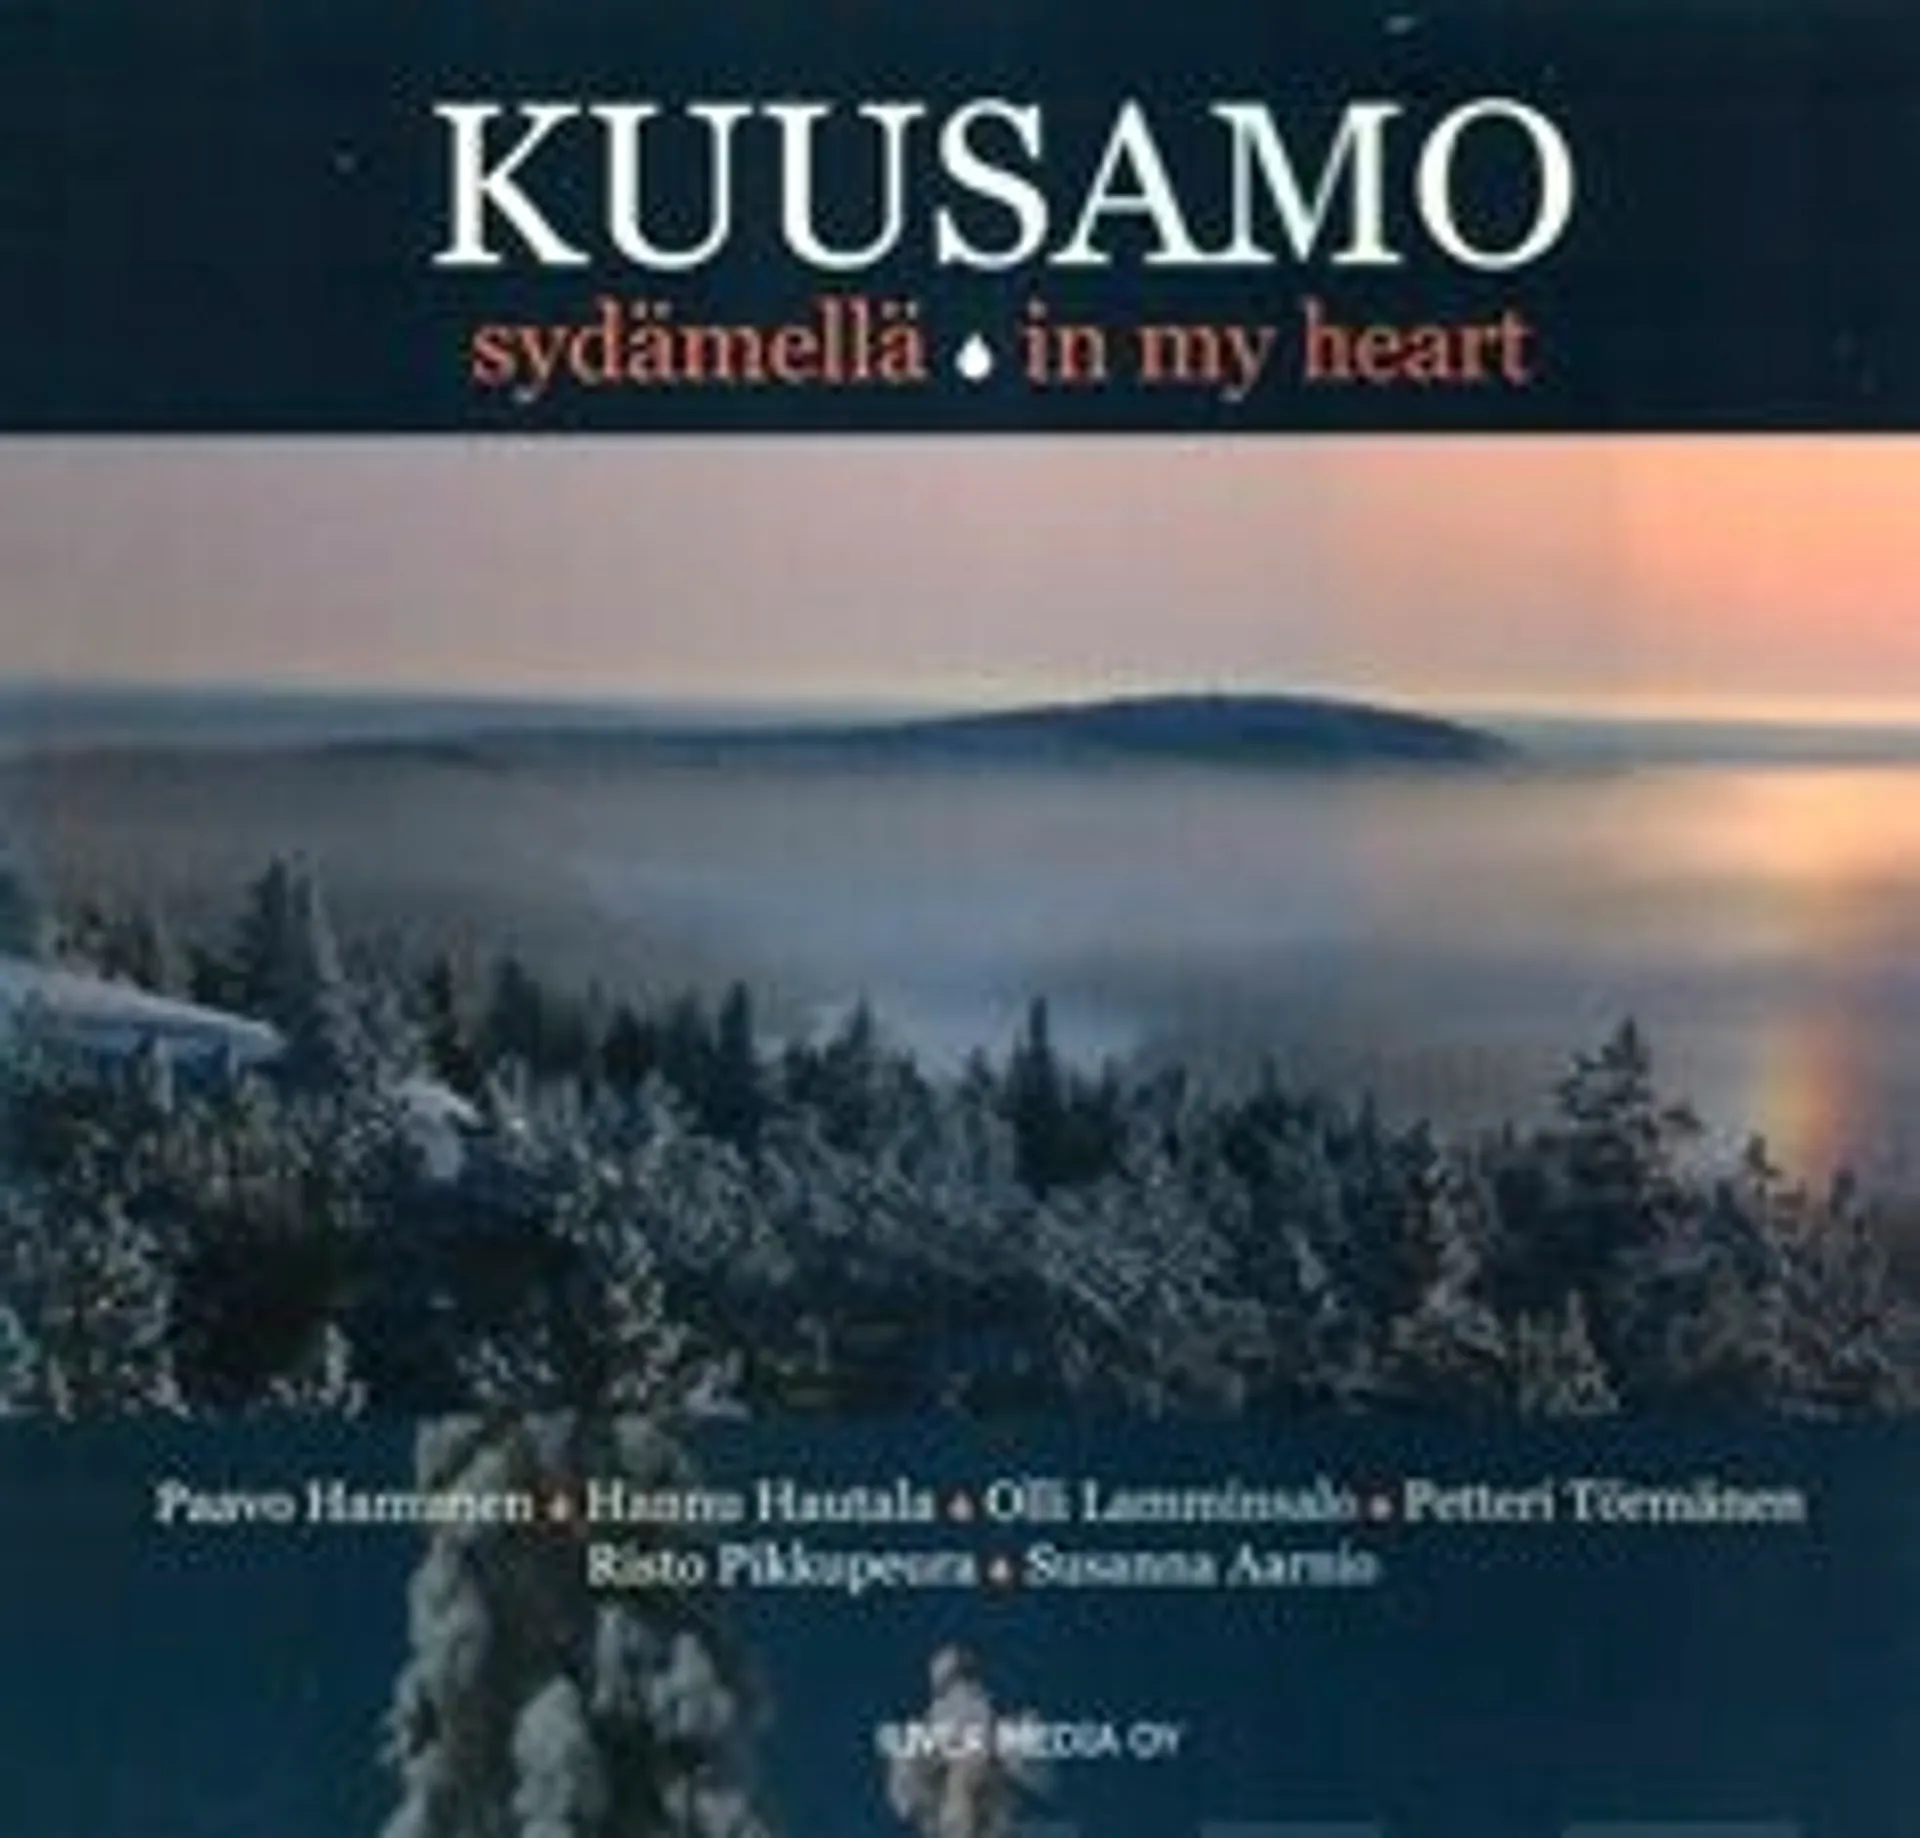 Kuusamo sydämellä - Kuusamo in my heart